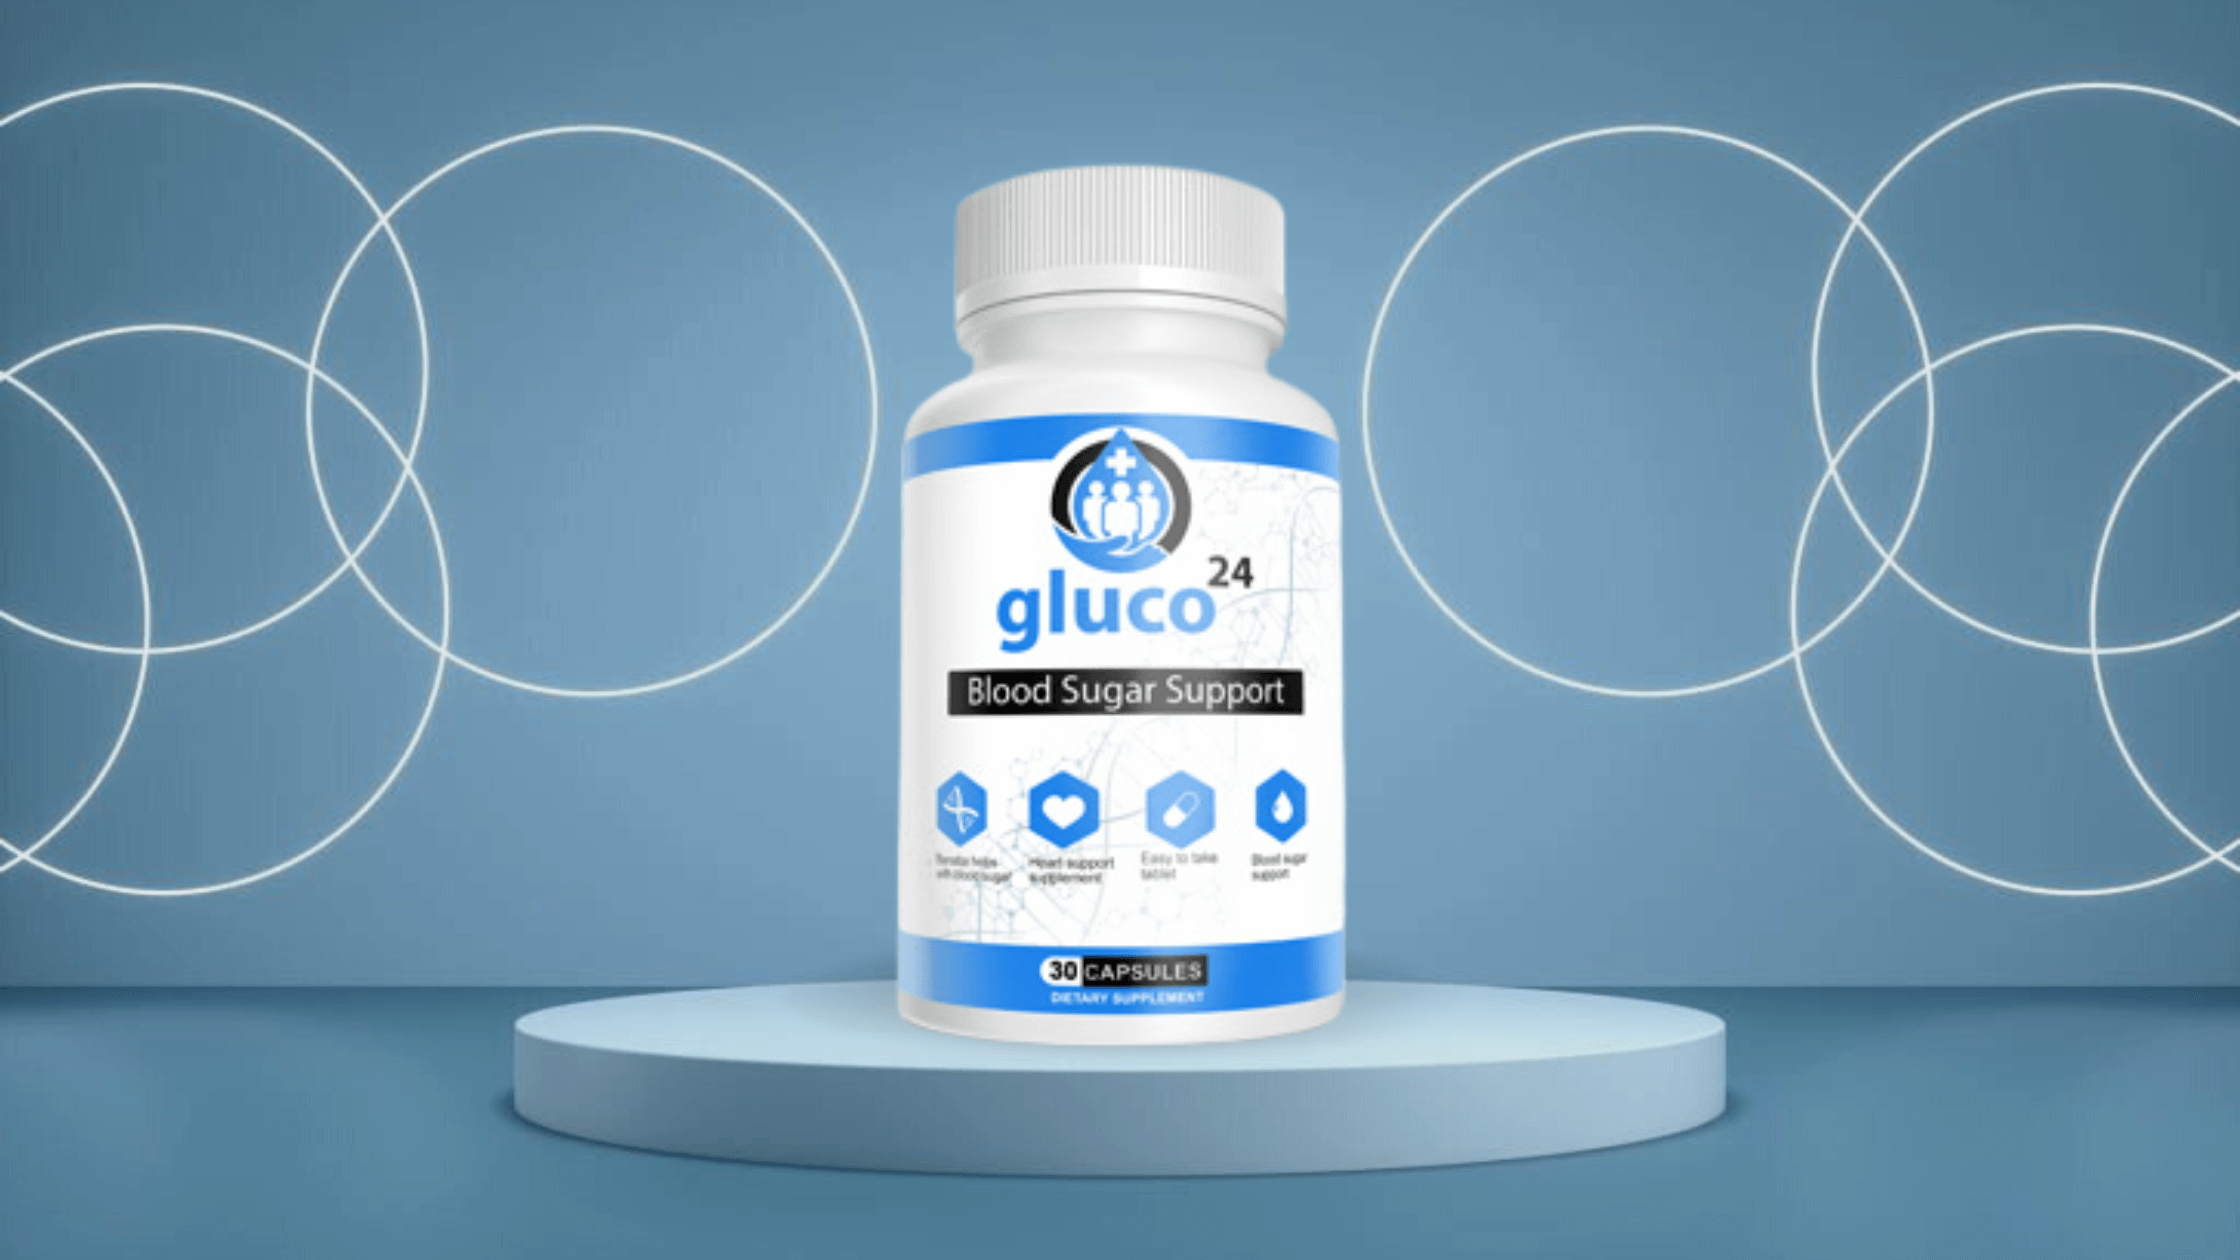 Gluco24 Reviews